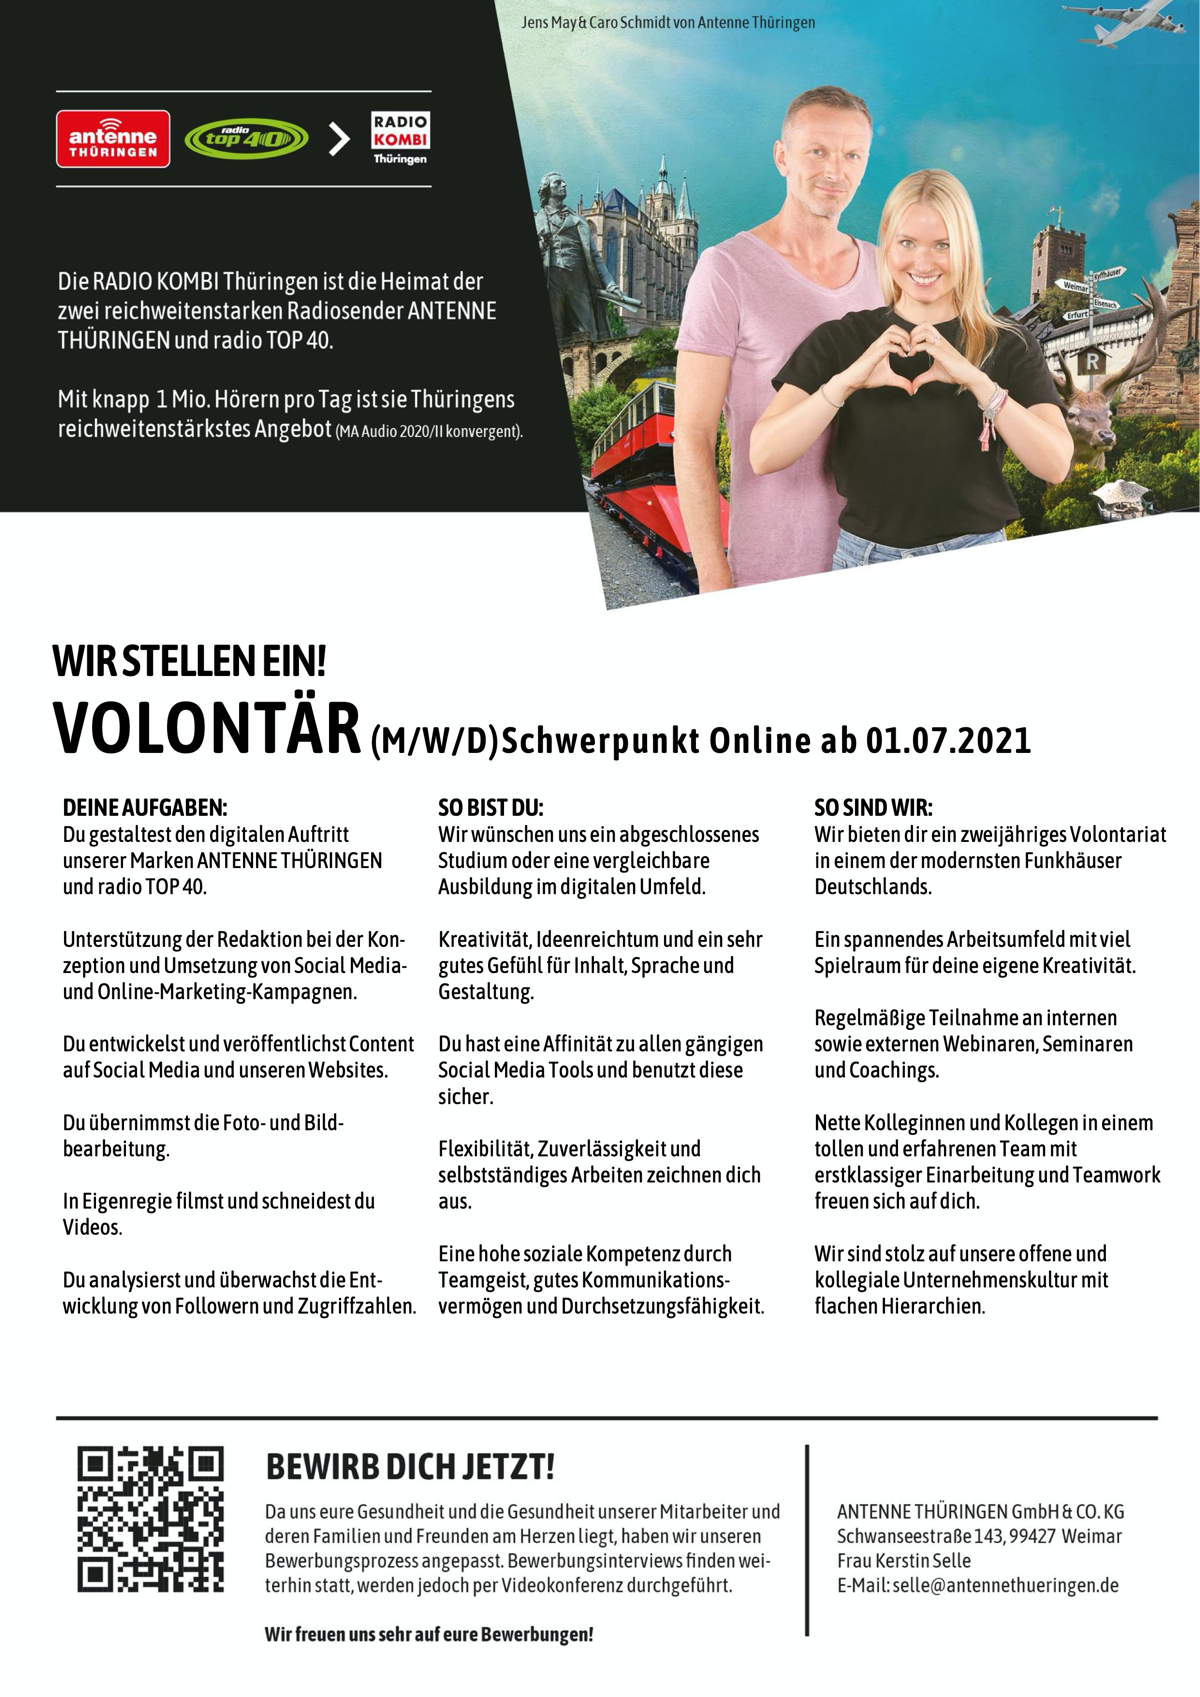 ANTENNE THÜRINGEN sucht Volontär (m/w/d) Schwerpunkt Online ab 01.07.2021